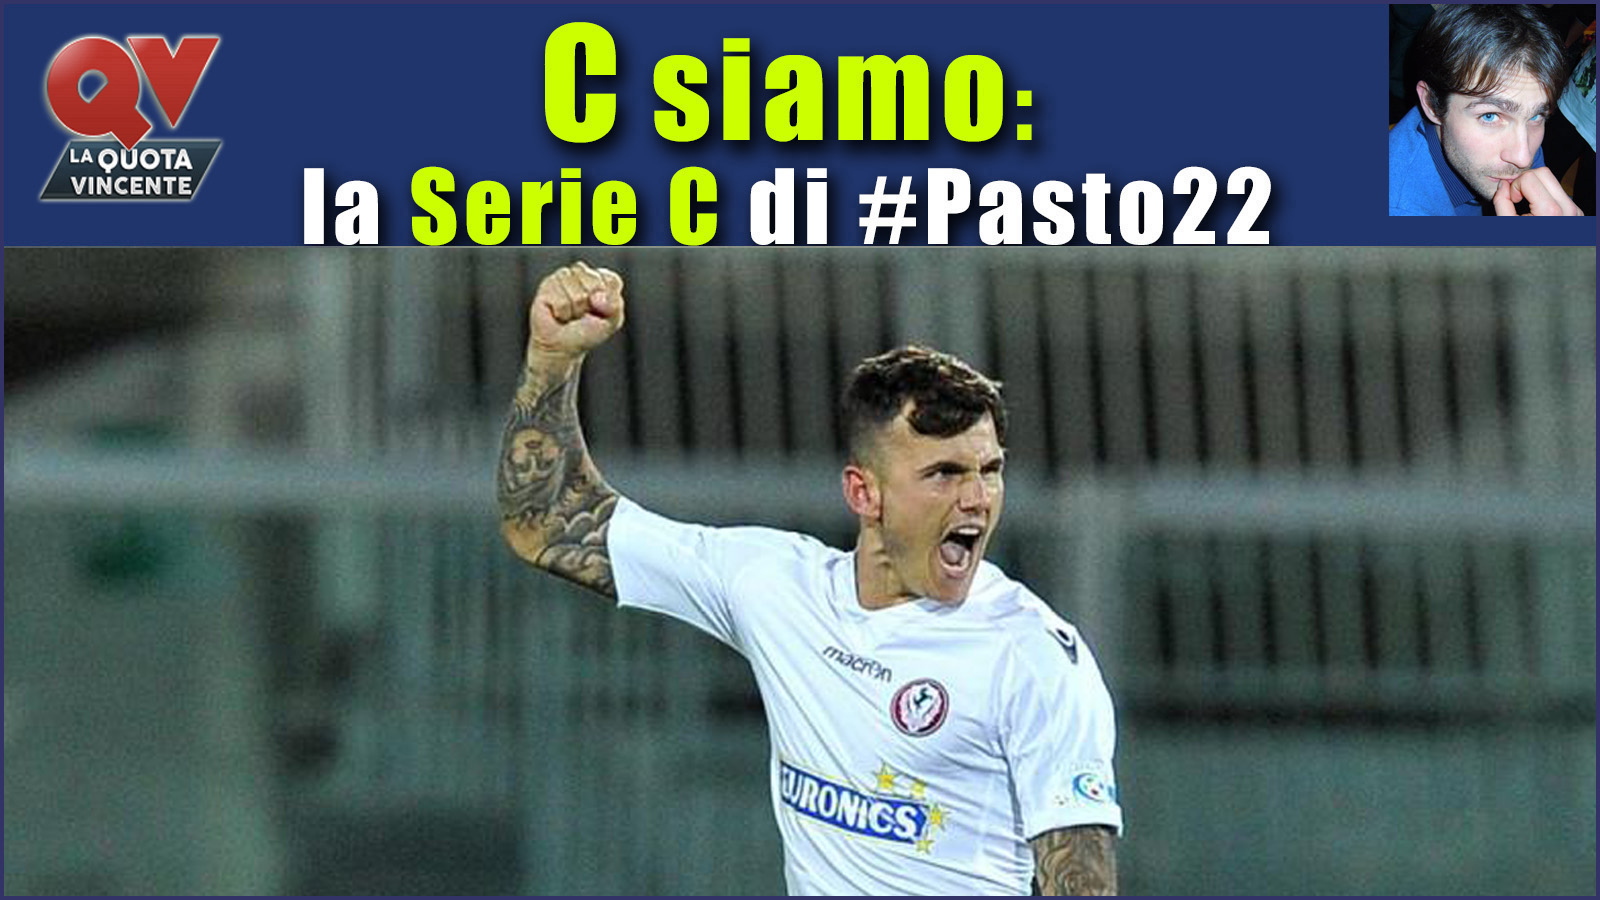 Pronostici Serie C sabato 4 novembre: #Csiamo, il blog di #Pasto22